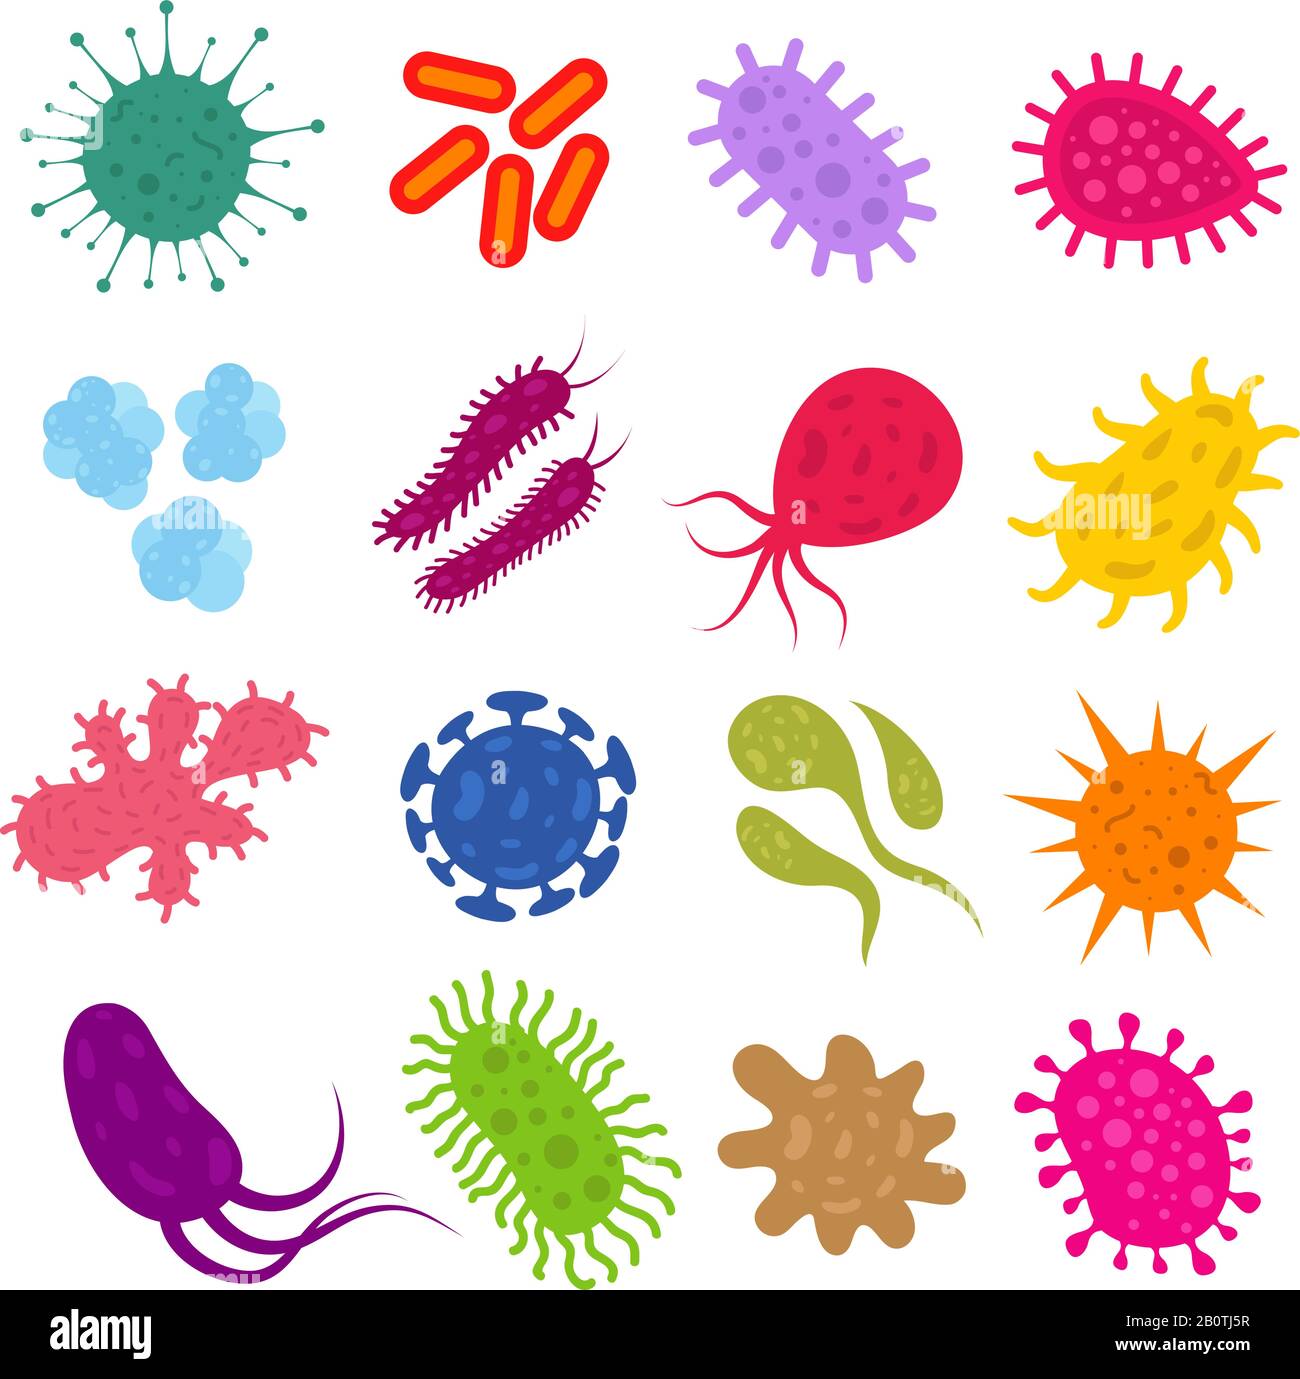 Bacterias infectadas y virus pandémicos iconos de biología vectorial. Ilustración de bacterias y alergenos de microorganismos microbianos Ilustración del Vector